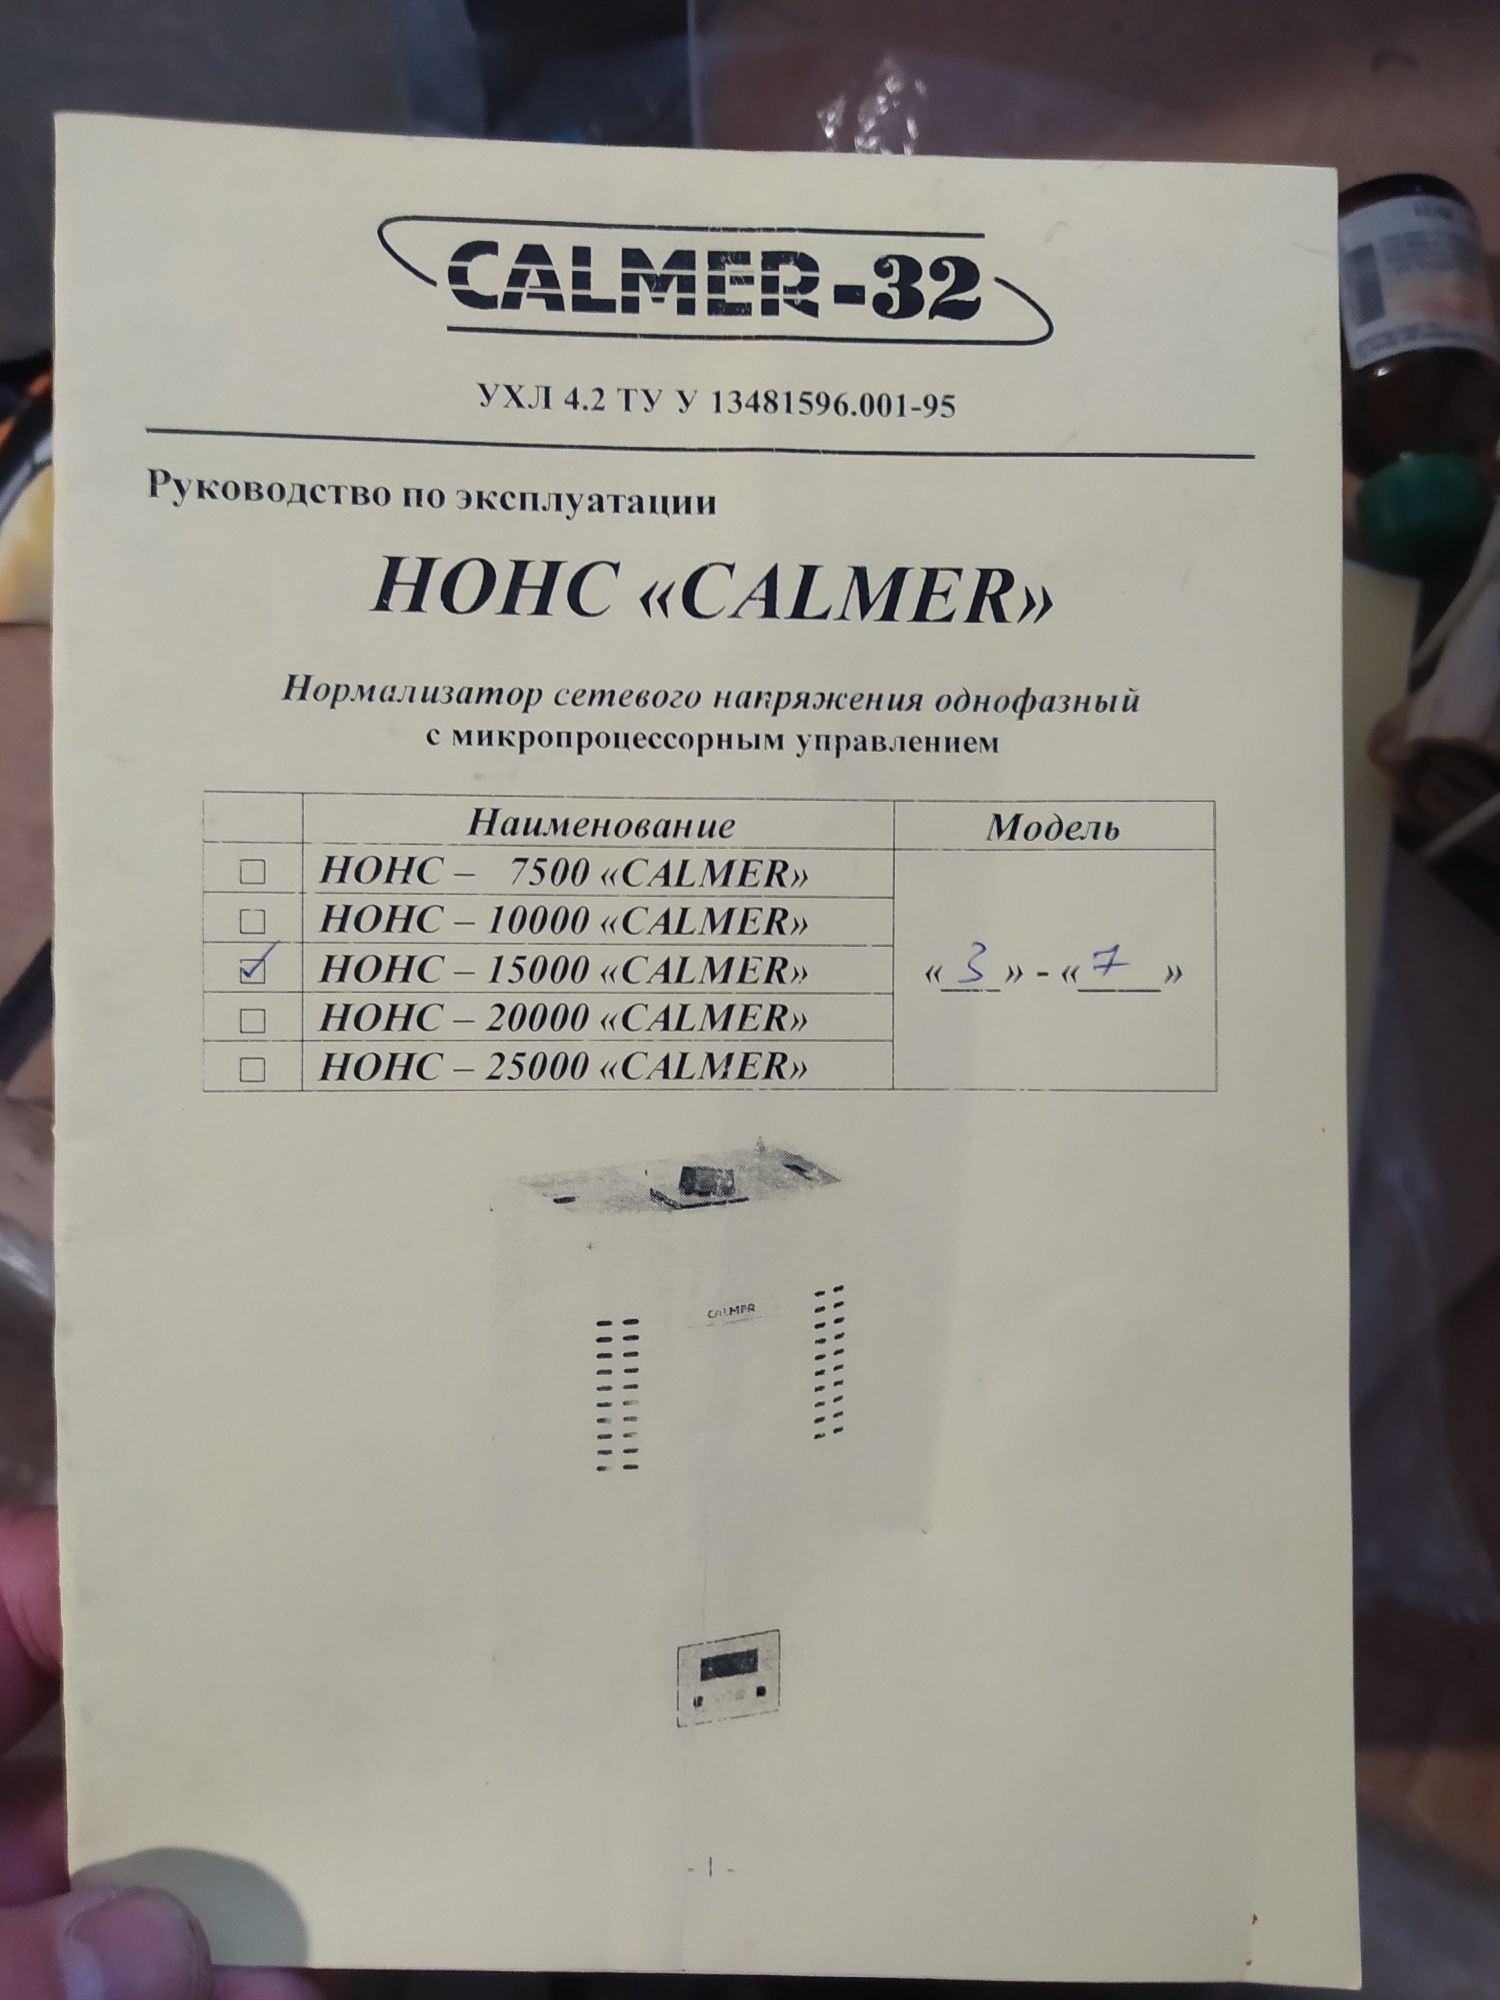 НОНС - 15000 "CALMER"